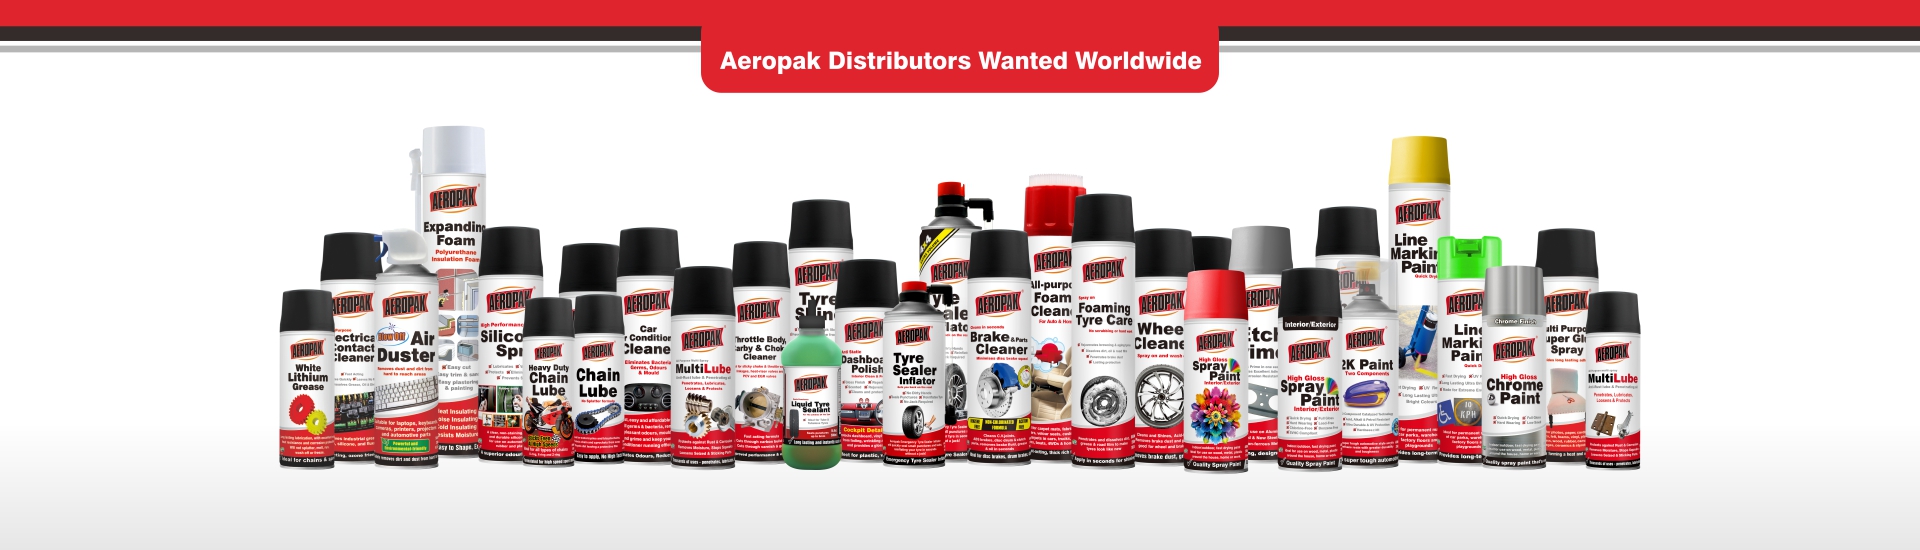 AEROPAK Brake Cleaner - SHENZHEN I-LIKE FINE CHEMICAL CO., LTD